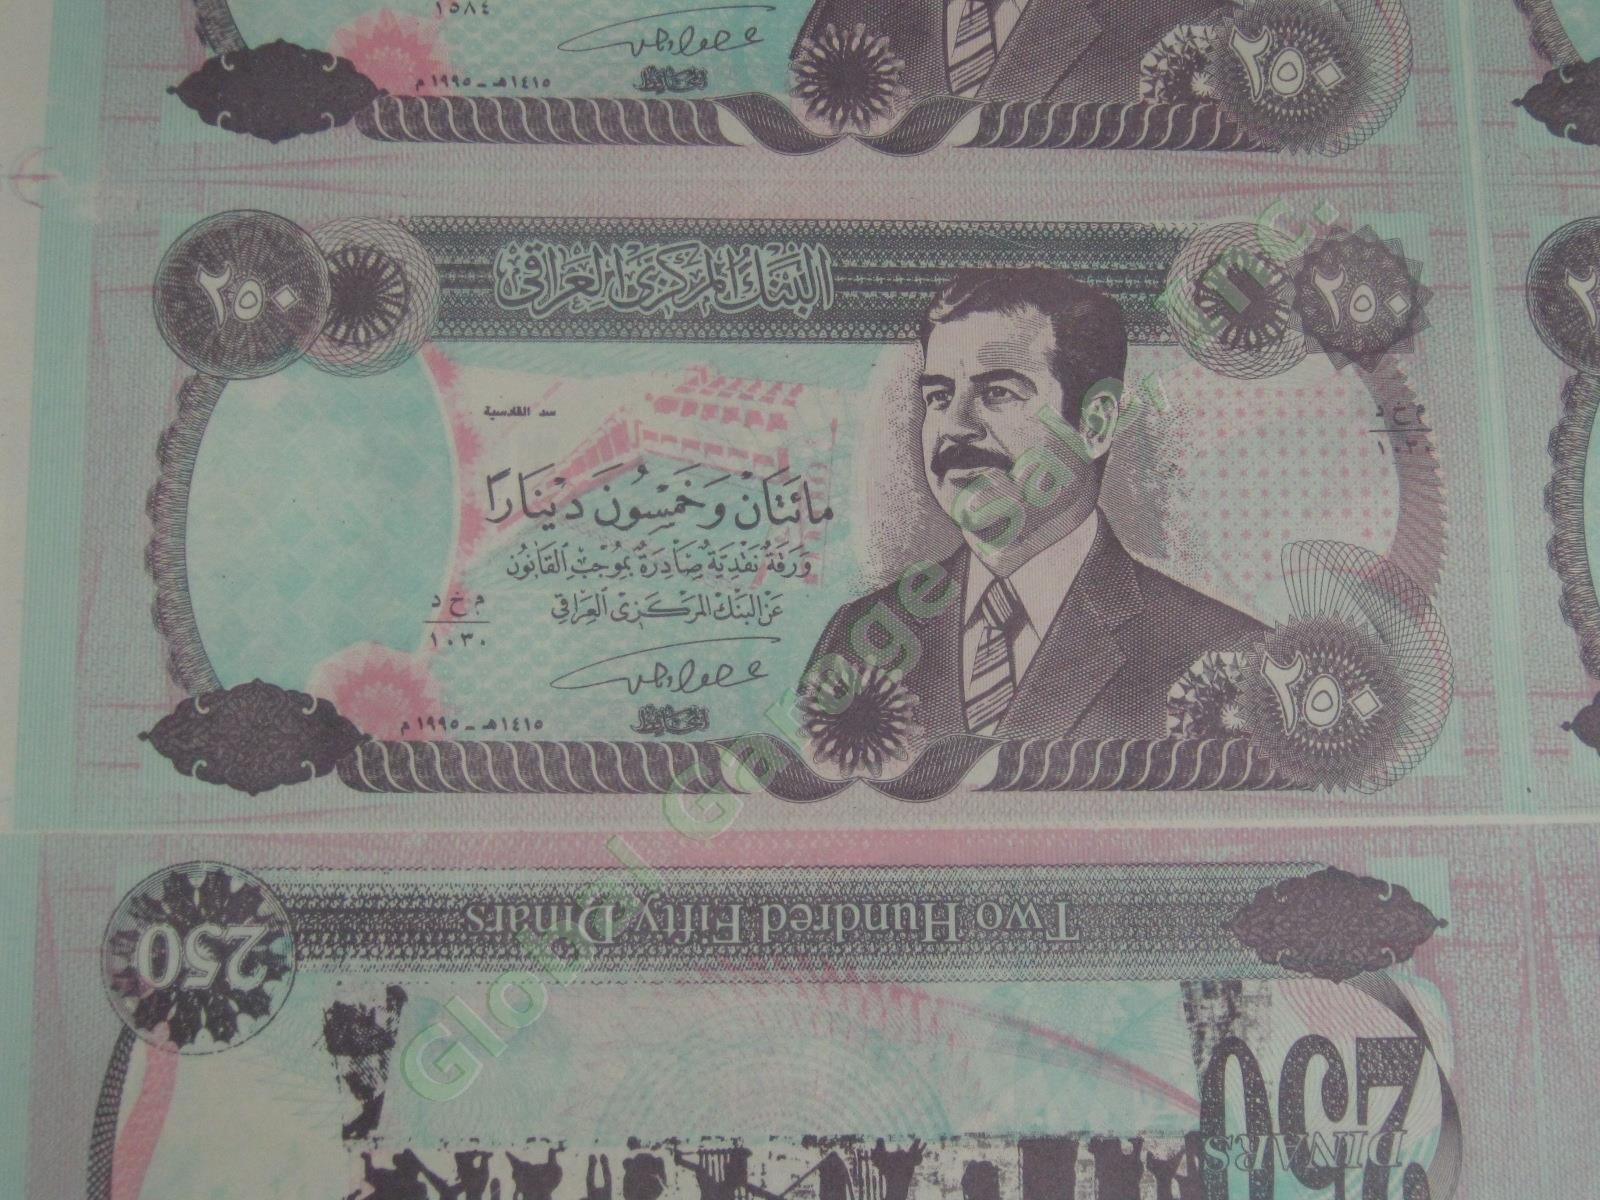 10 Rare Uncut Sheets Iraq Iraqi 250 Dinars Seized By US Army 2003 Saddam Hussein 2